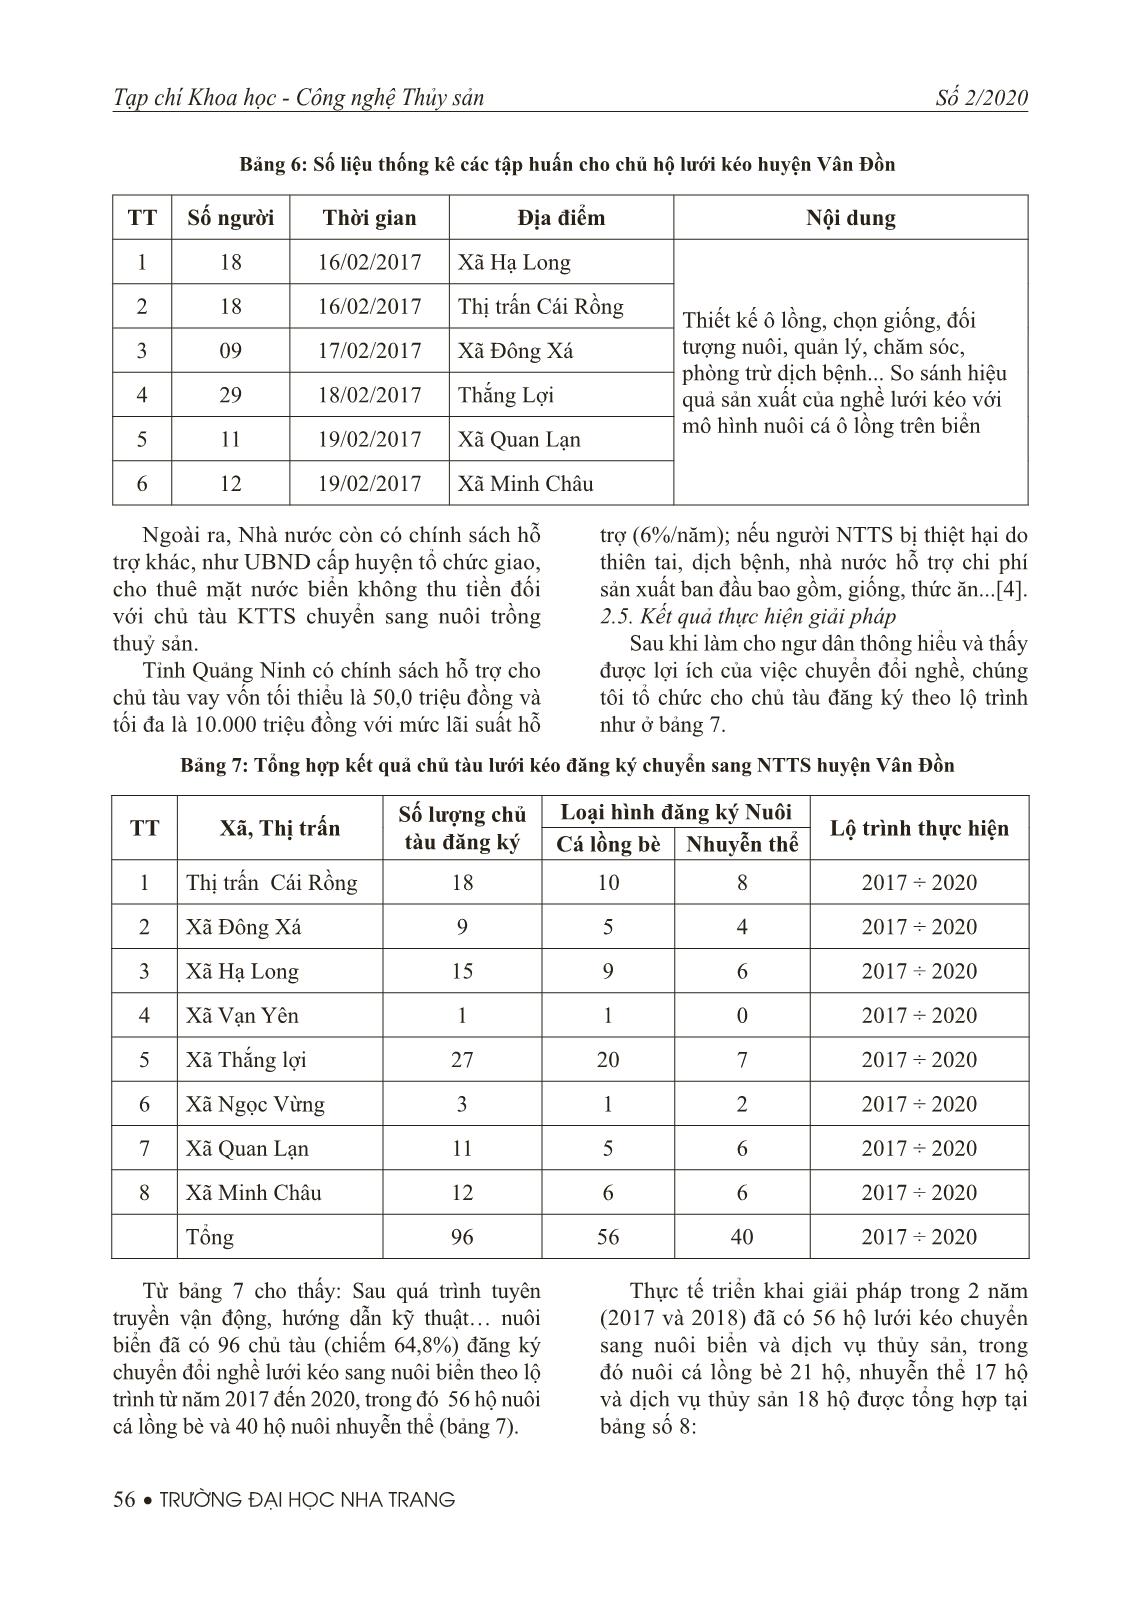 Kết quả nghiên cứu xây dựng giải pháp chuyển đổi nghề lưới kéo của huyện Vân Đồn, tỉnh Quảng Ninh khai thác thuỷ sản tại vùng biển ven bờ sang nghề nuôi biển trang 8